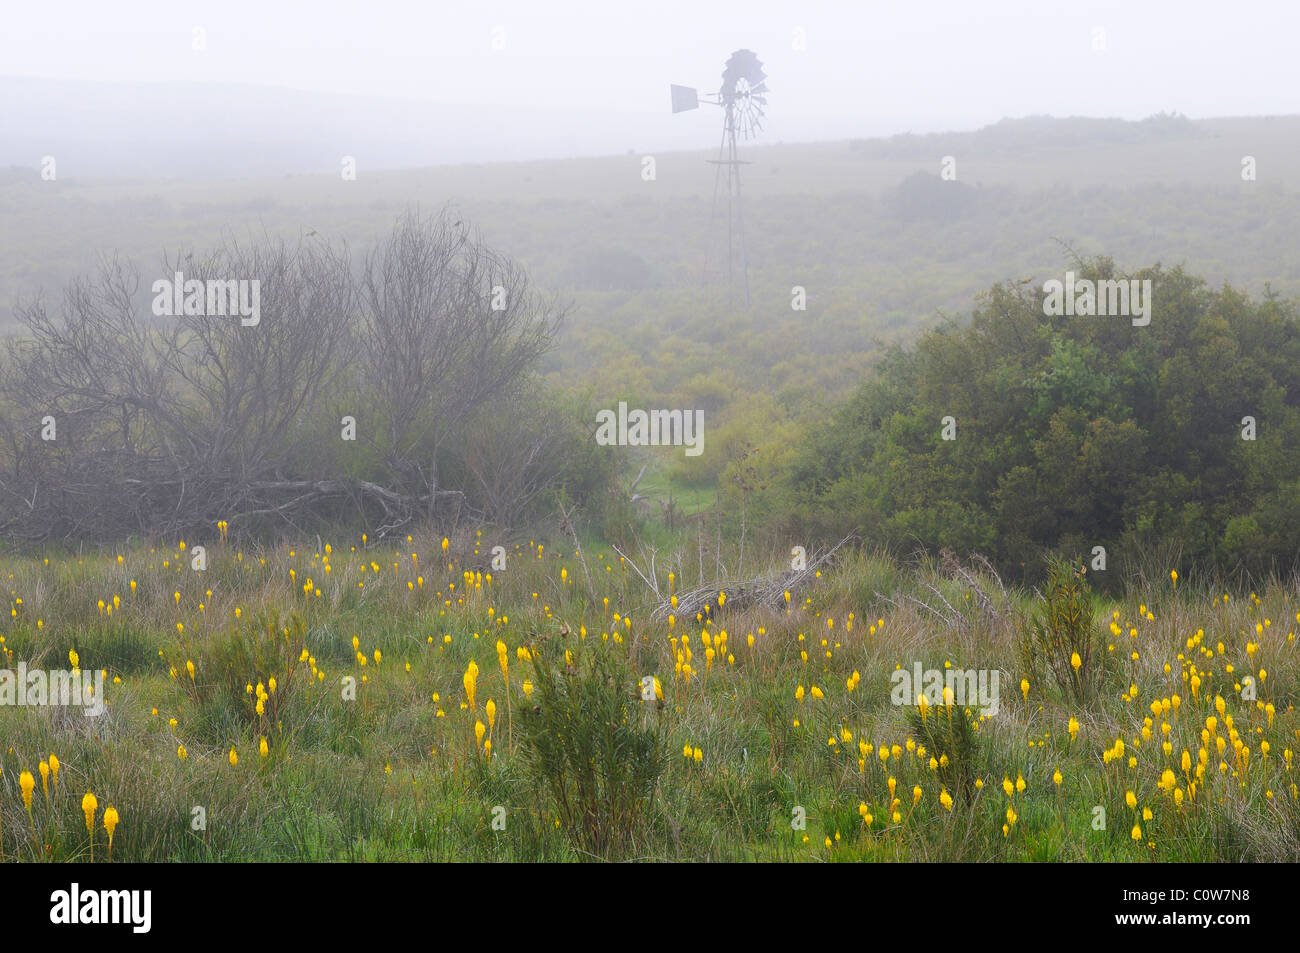 Bulbinella latifolia, rooikatstert, Bokkeveld plateau dans le brouillard, le Namaqualand, Afrique du Sud Banque D'Images